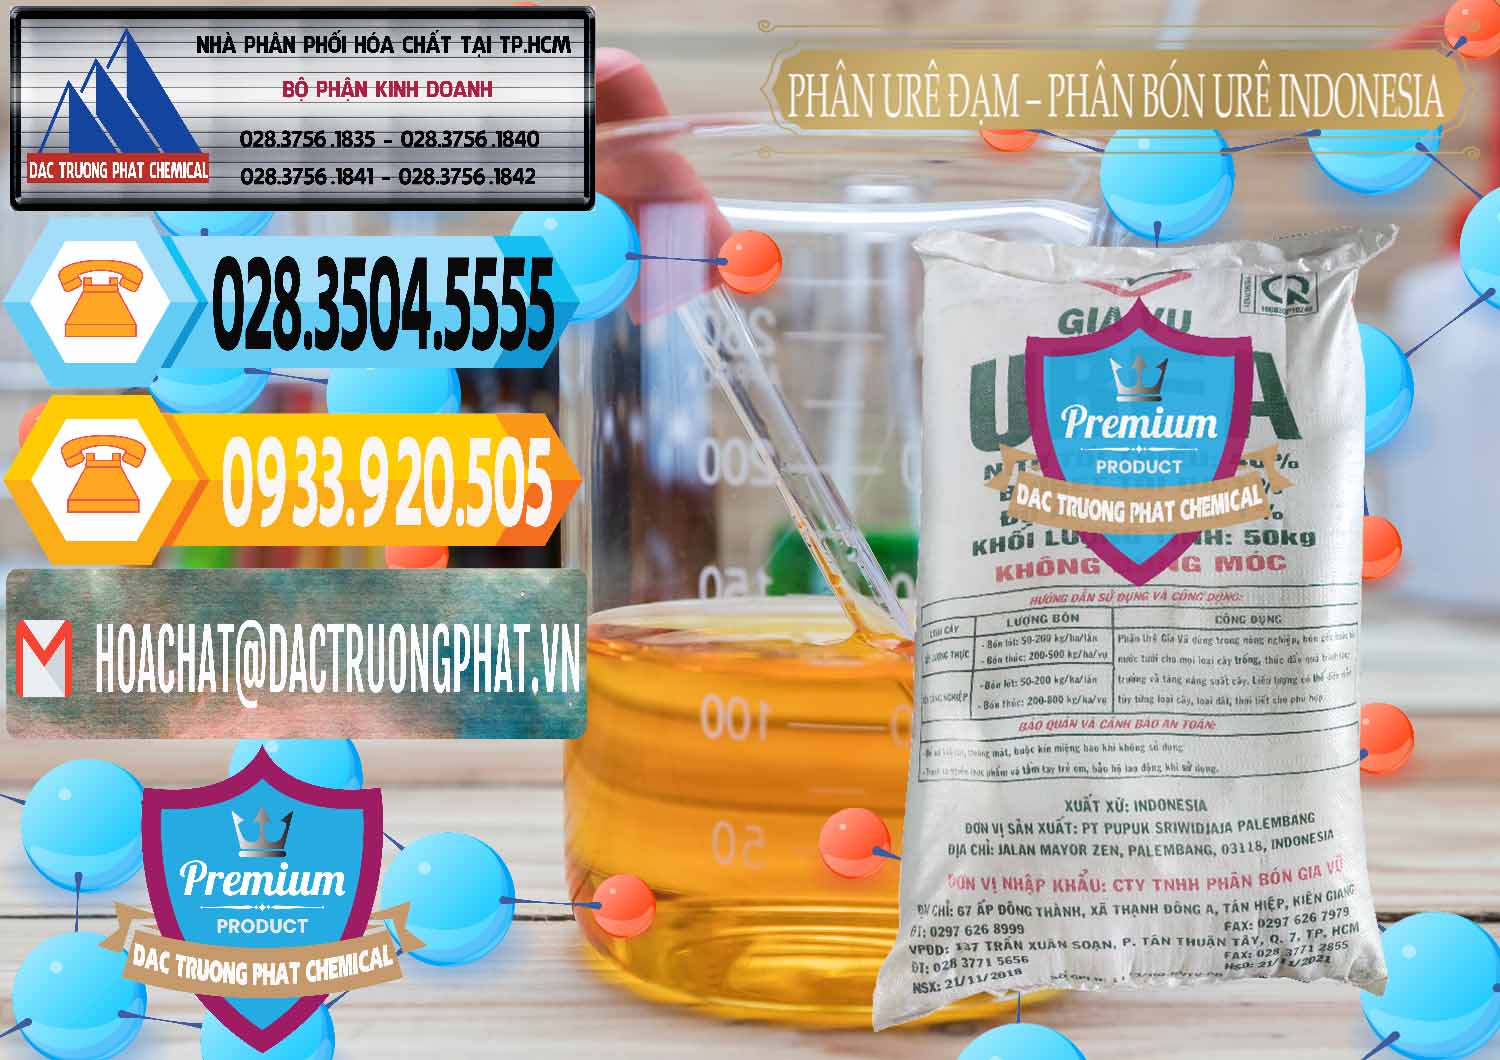 Bán & cung ứng Phân Urê Đạm – Phân Bón Urê Indonesia - 0194 - Đơn vị chuyên cung cấp ( nhập khẩu ) hóa chất tại TP.HCM - hoachattayrua.net